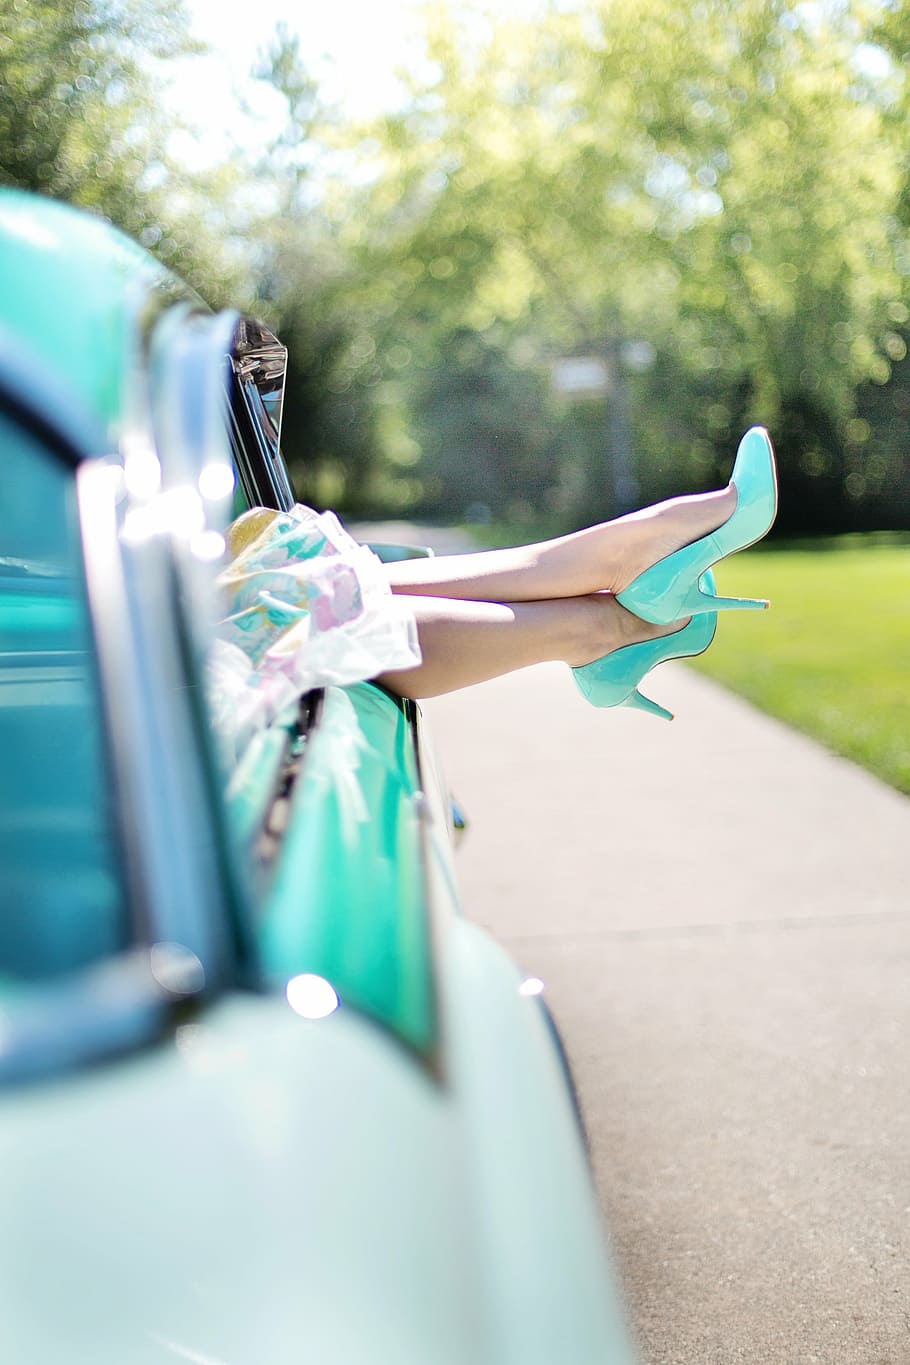 seletiva, fotografia de foco, pessoa, vestindo, sapatos de salto alto azul-petróleo, pernas de mulher, sapatos de salto alto, carros antigos, turquesa, década de 1950